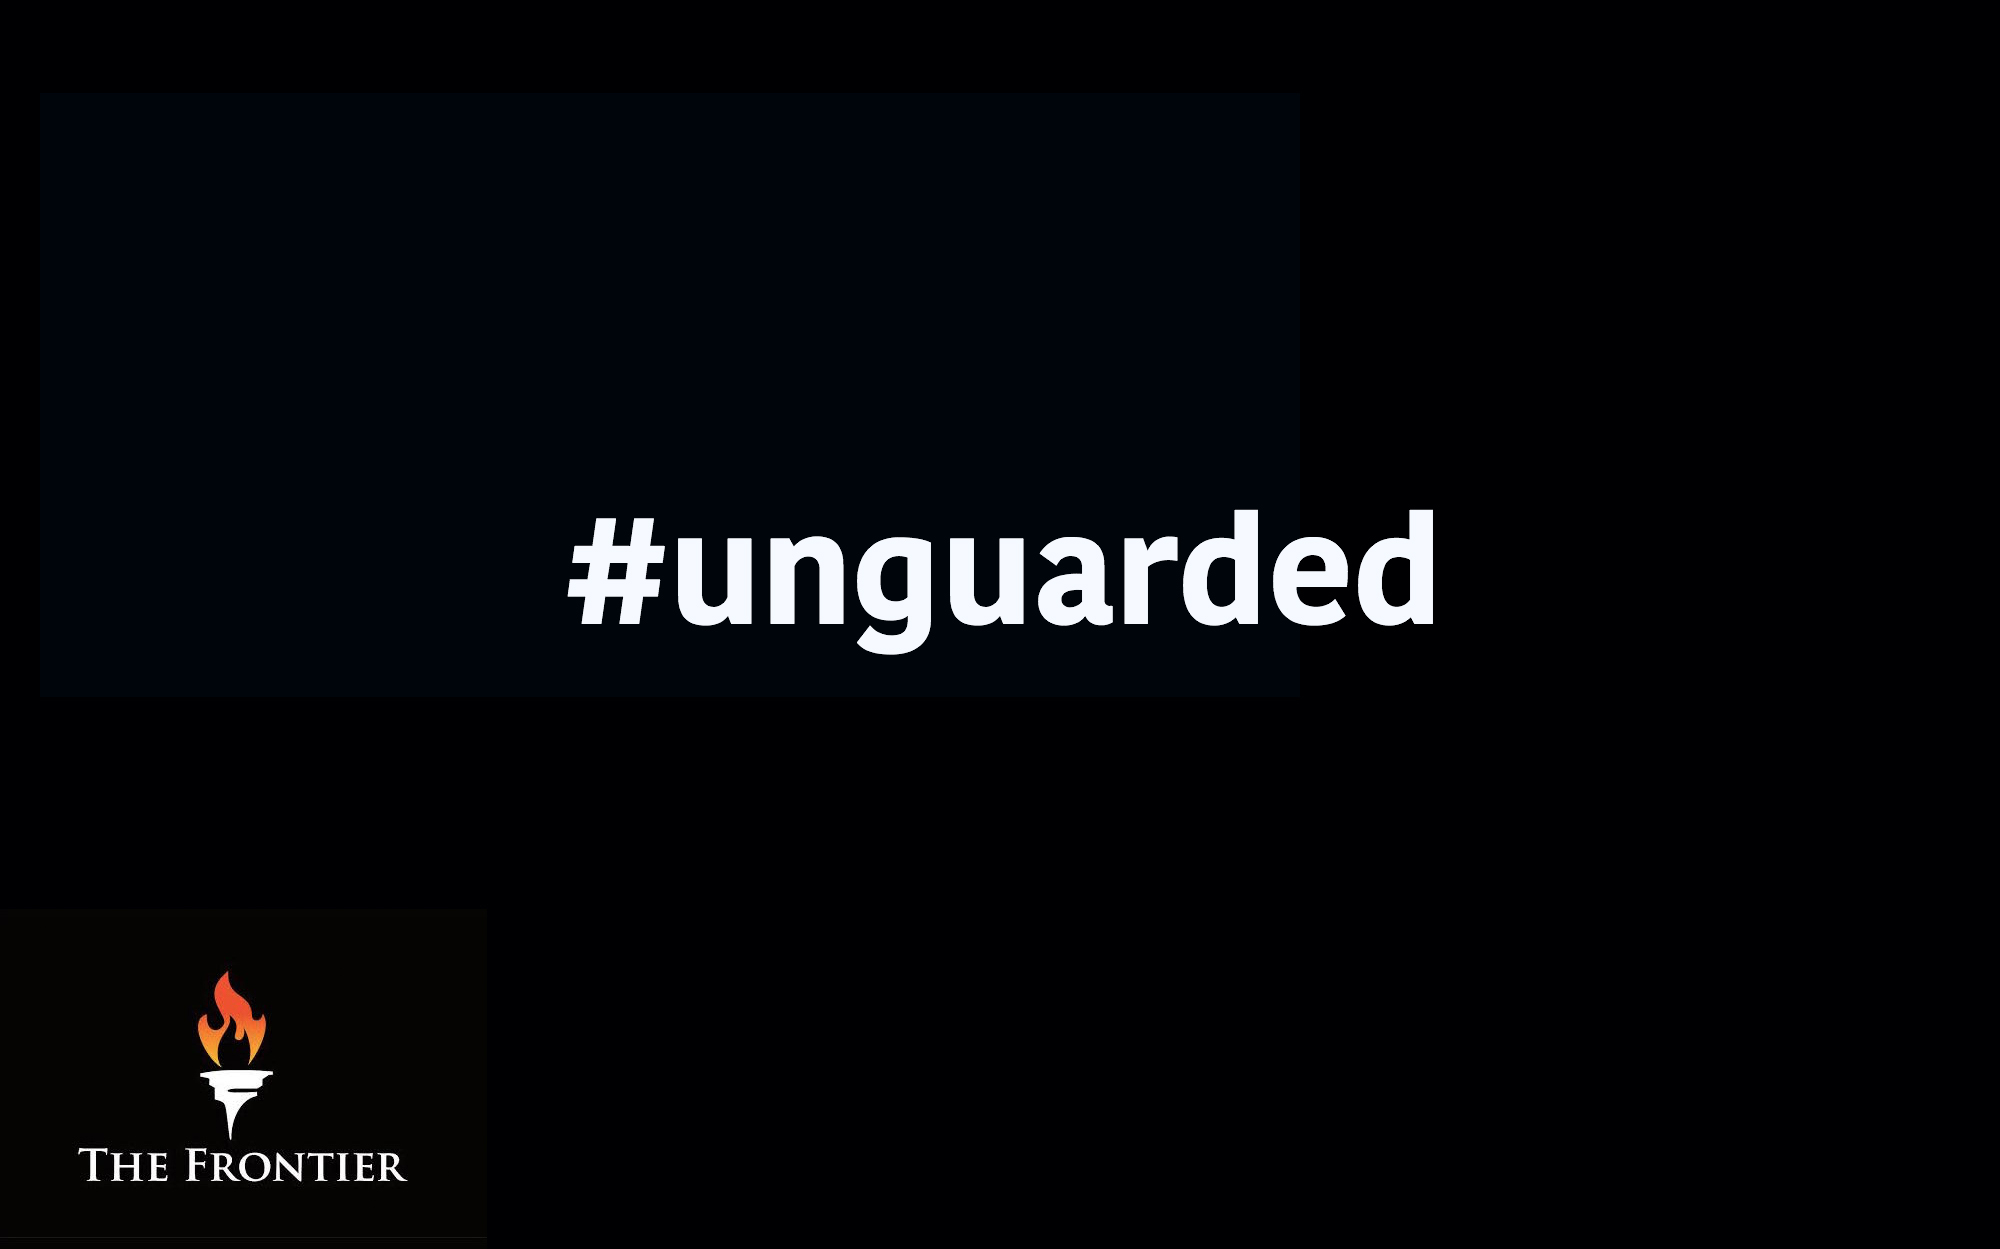 unguarded